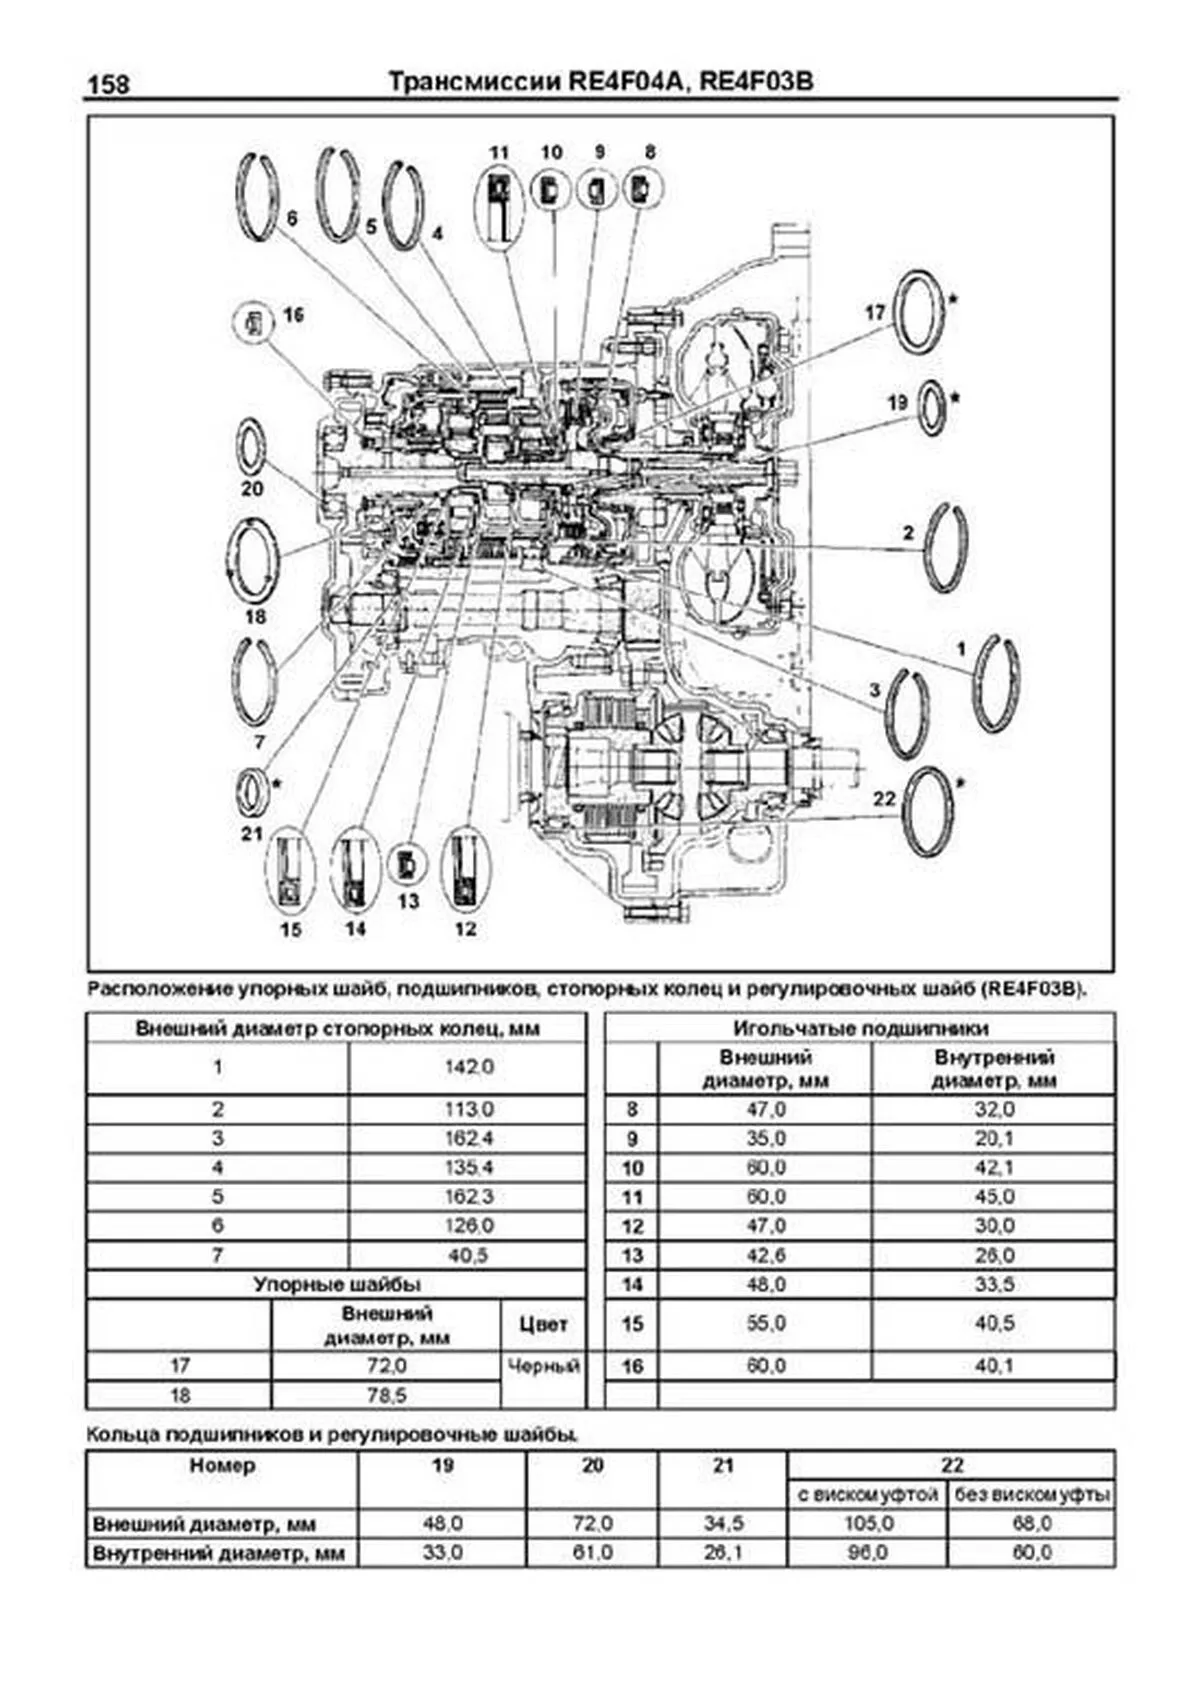 Книга: Автоматические коробки передач Nissan RE4F02A / RE4F04A / RE4F03B (Том 1), сер.ПРОФ. | Легион-Aвтодата